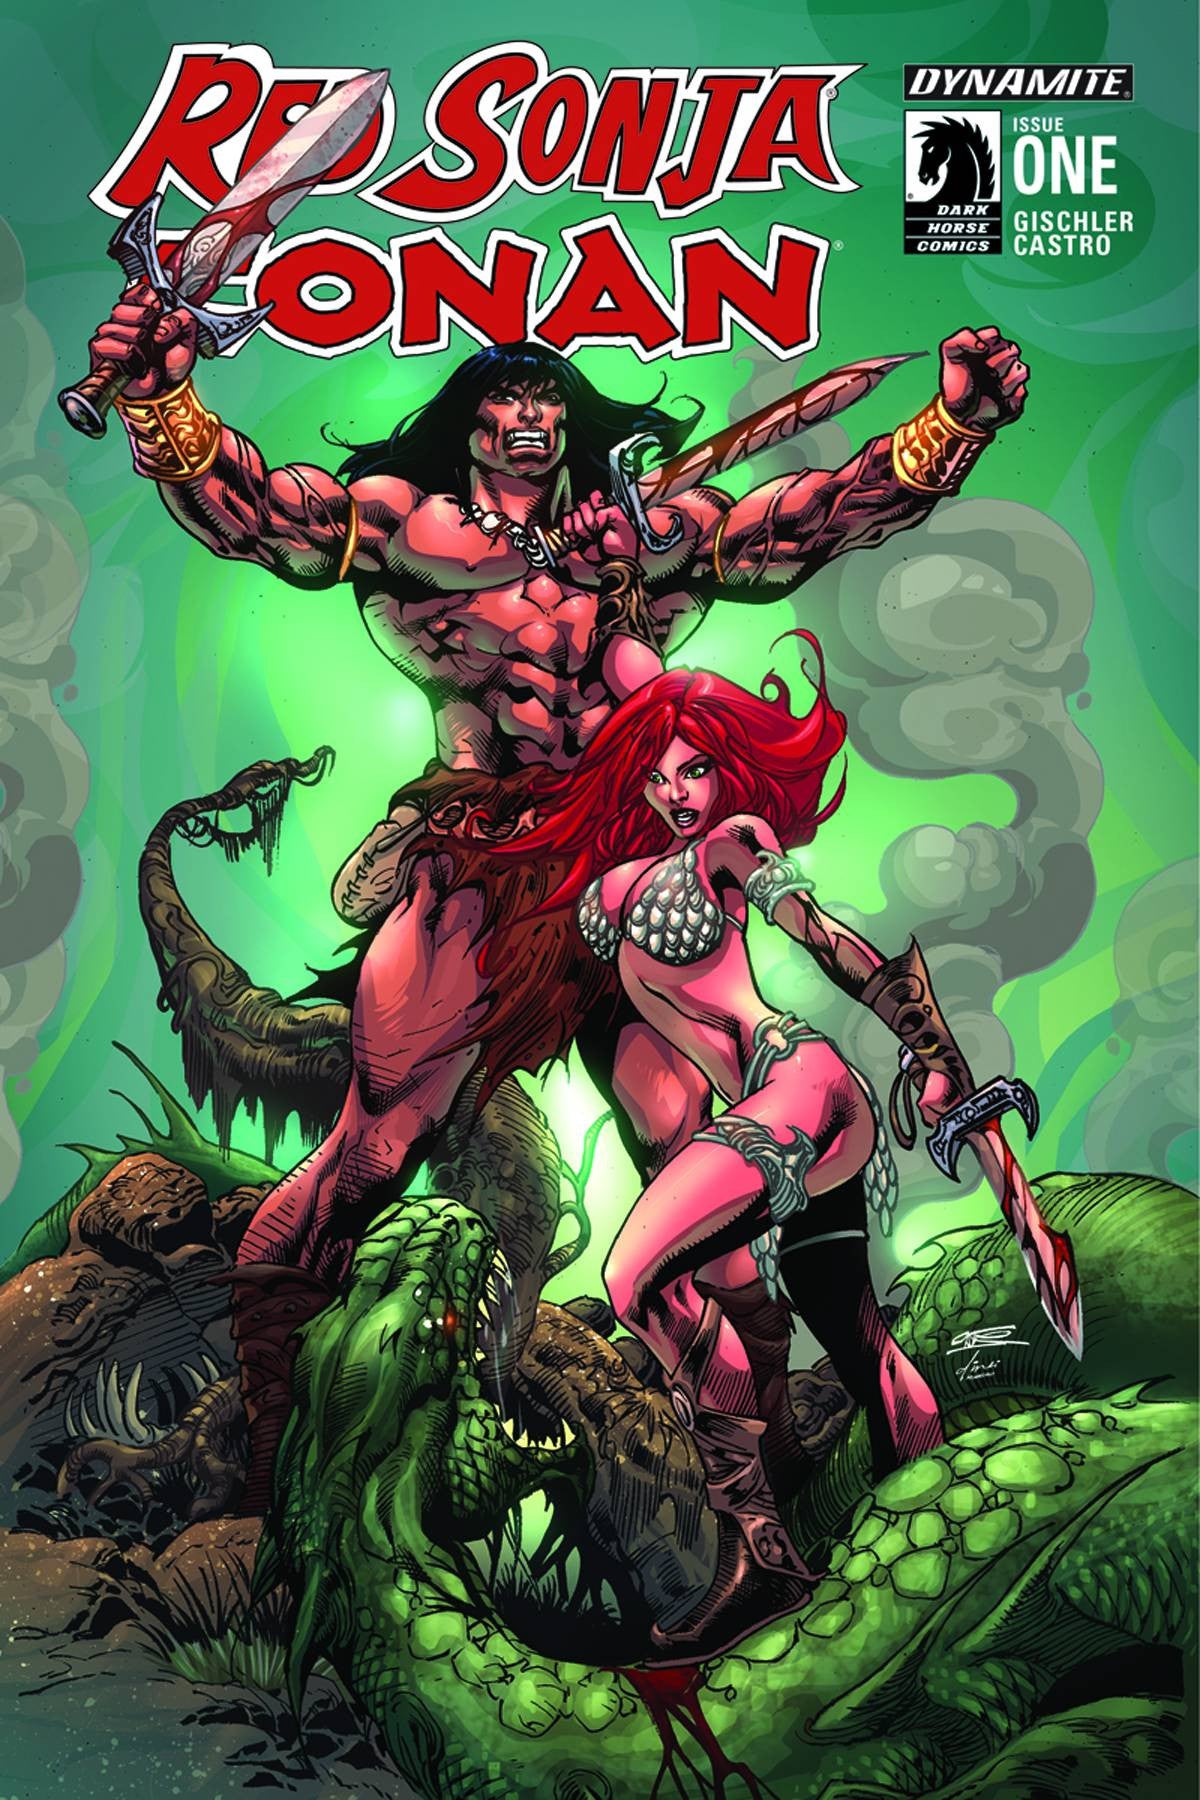 Red Sonja Conan (2015) #1 "Subscription" Variant